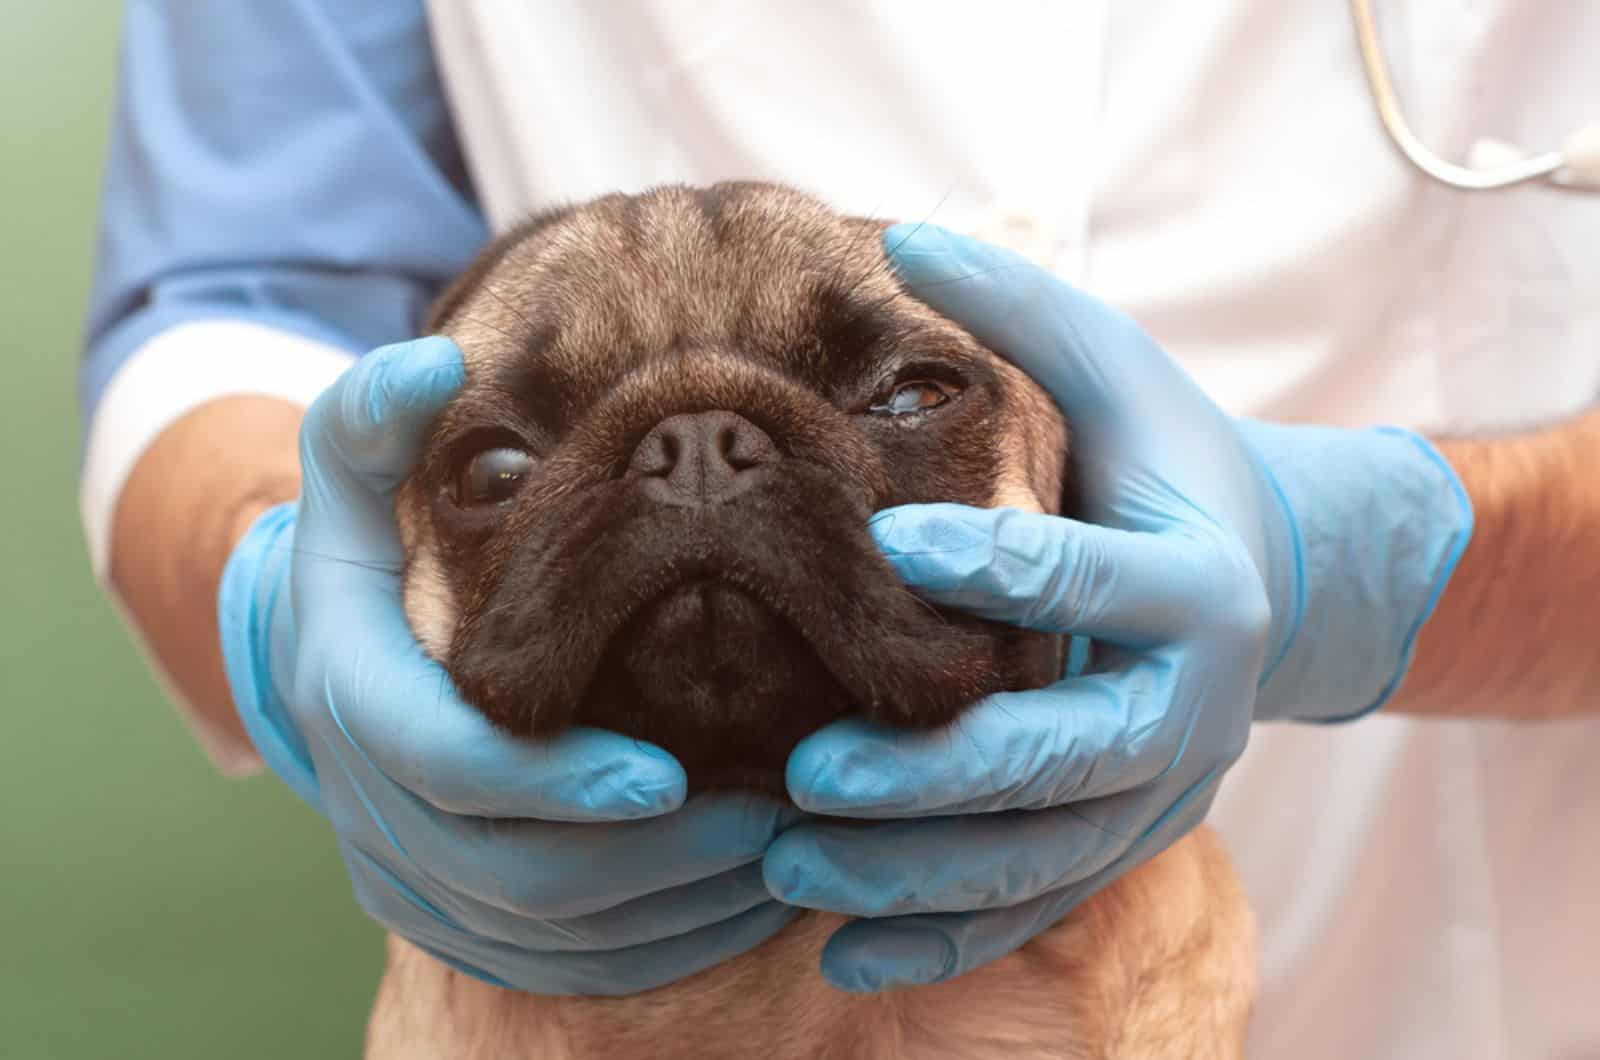 pug dog at vet clinic on eye examination